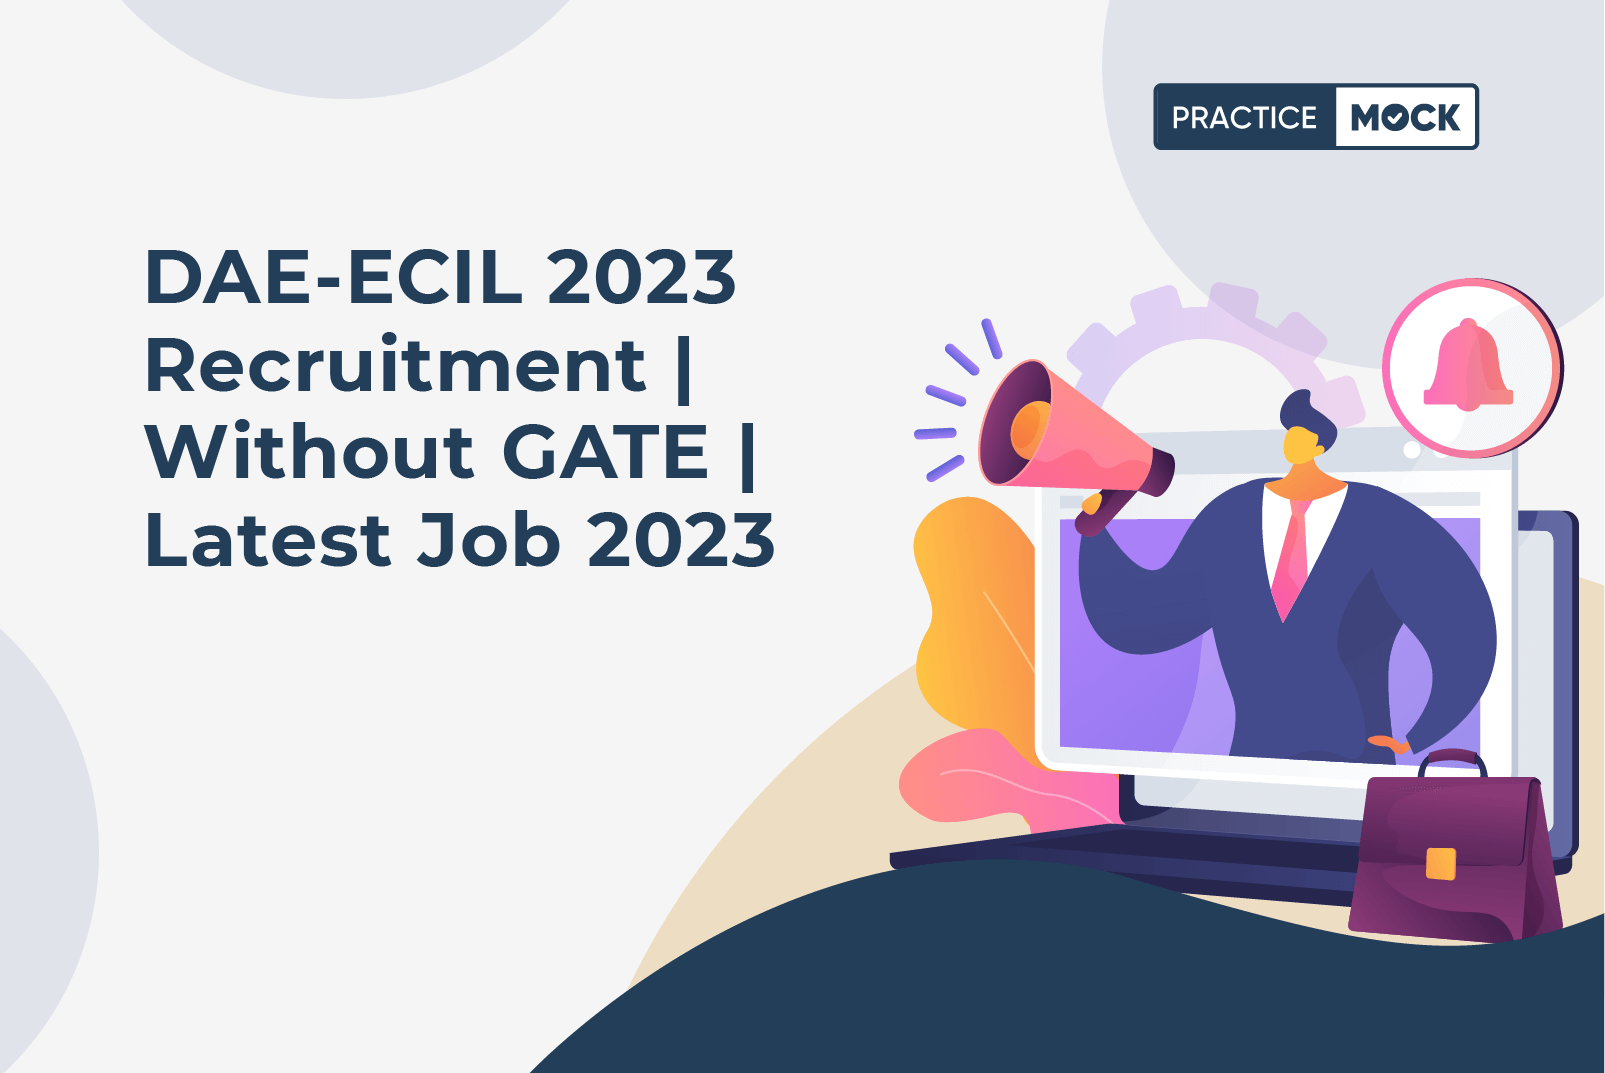 FI_DAE-ECIL_Recruitment_300523 (1)